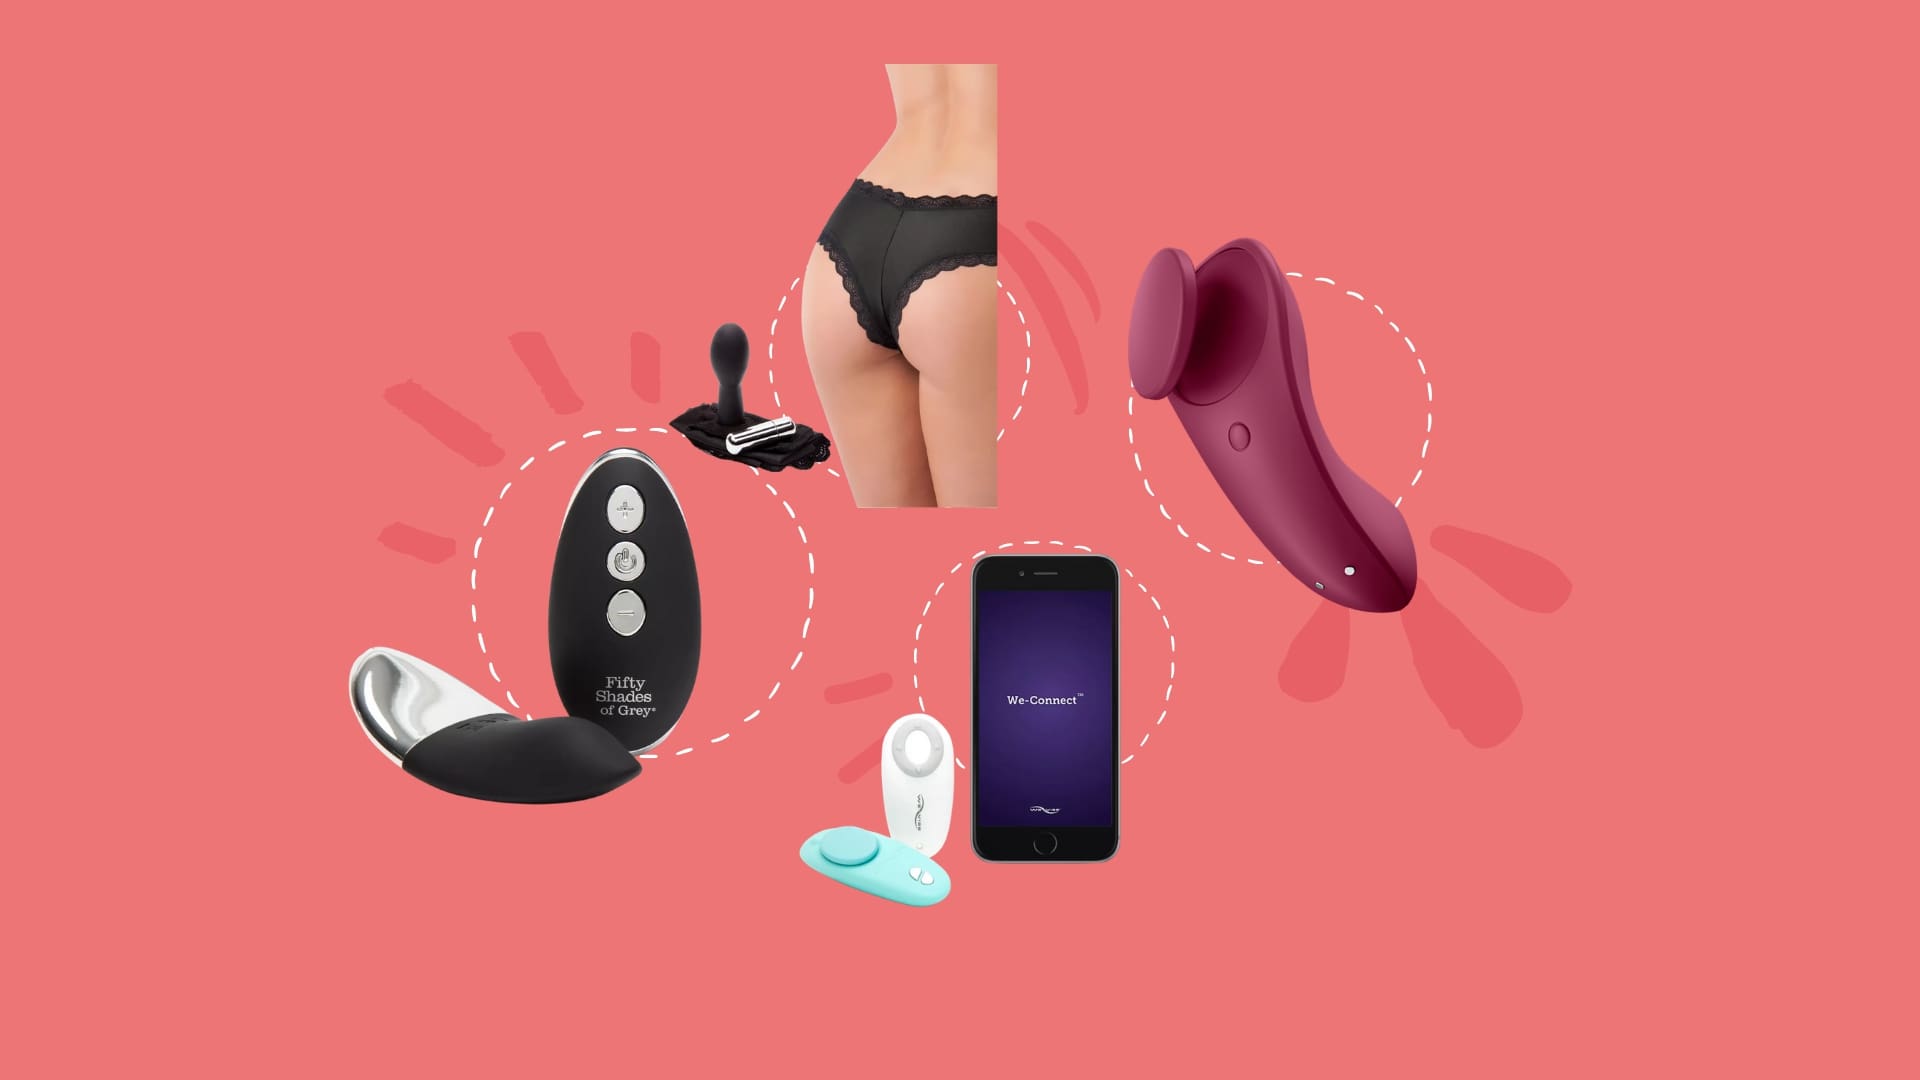 Bester Slip Vibrator – Test & Erfahrung mit vibrierender Unterwäsche